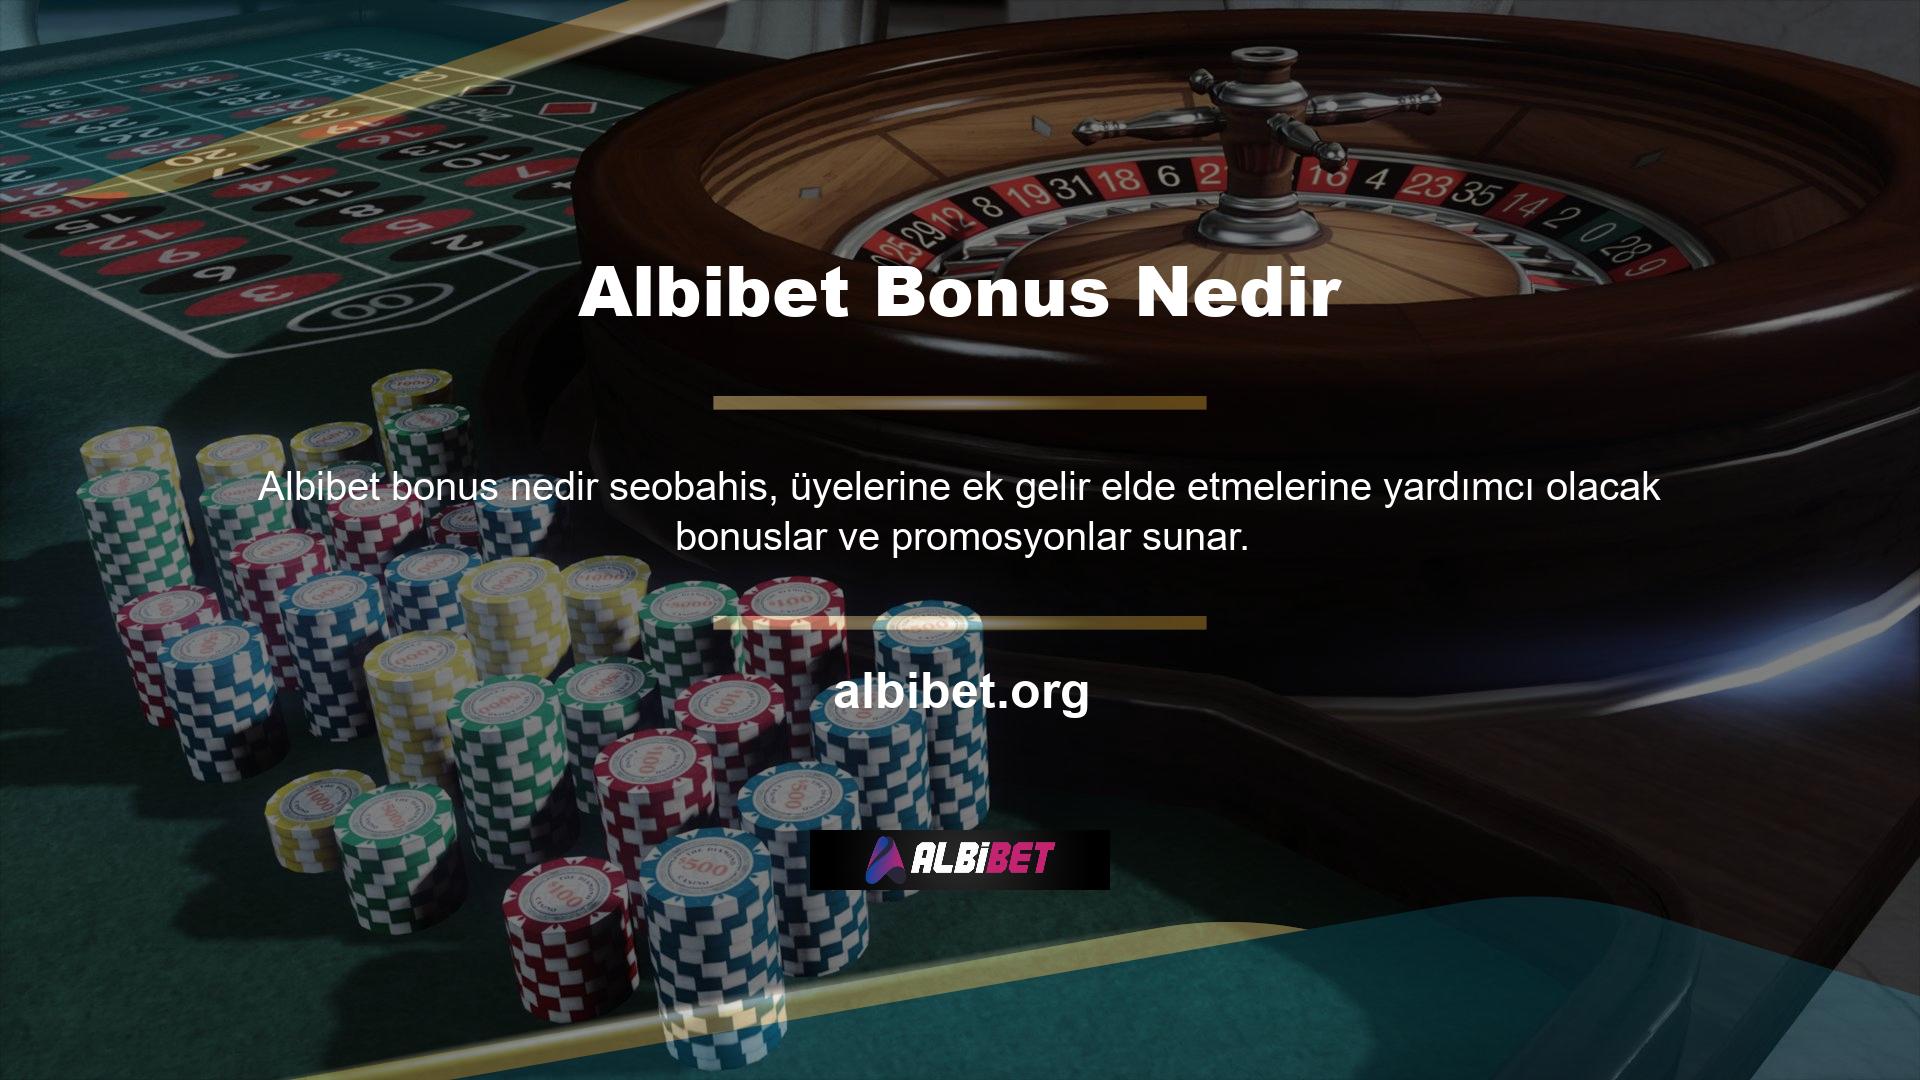 Özellikle spor oyunlarında artık bonusların yüksek olması nedeniyle kullanıcıların ilgisini çekmeyi hedefleyen Albibet, bu alanda büyük bir başarıya imza atmış durumda